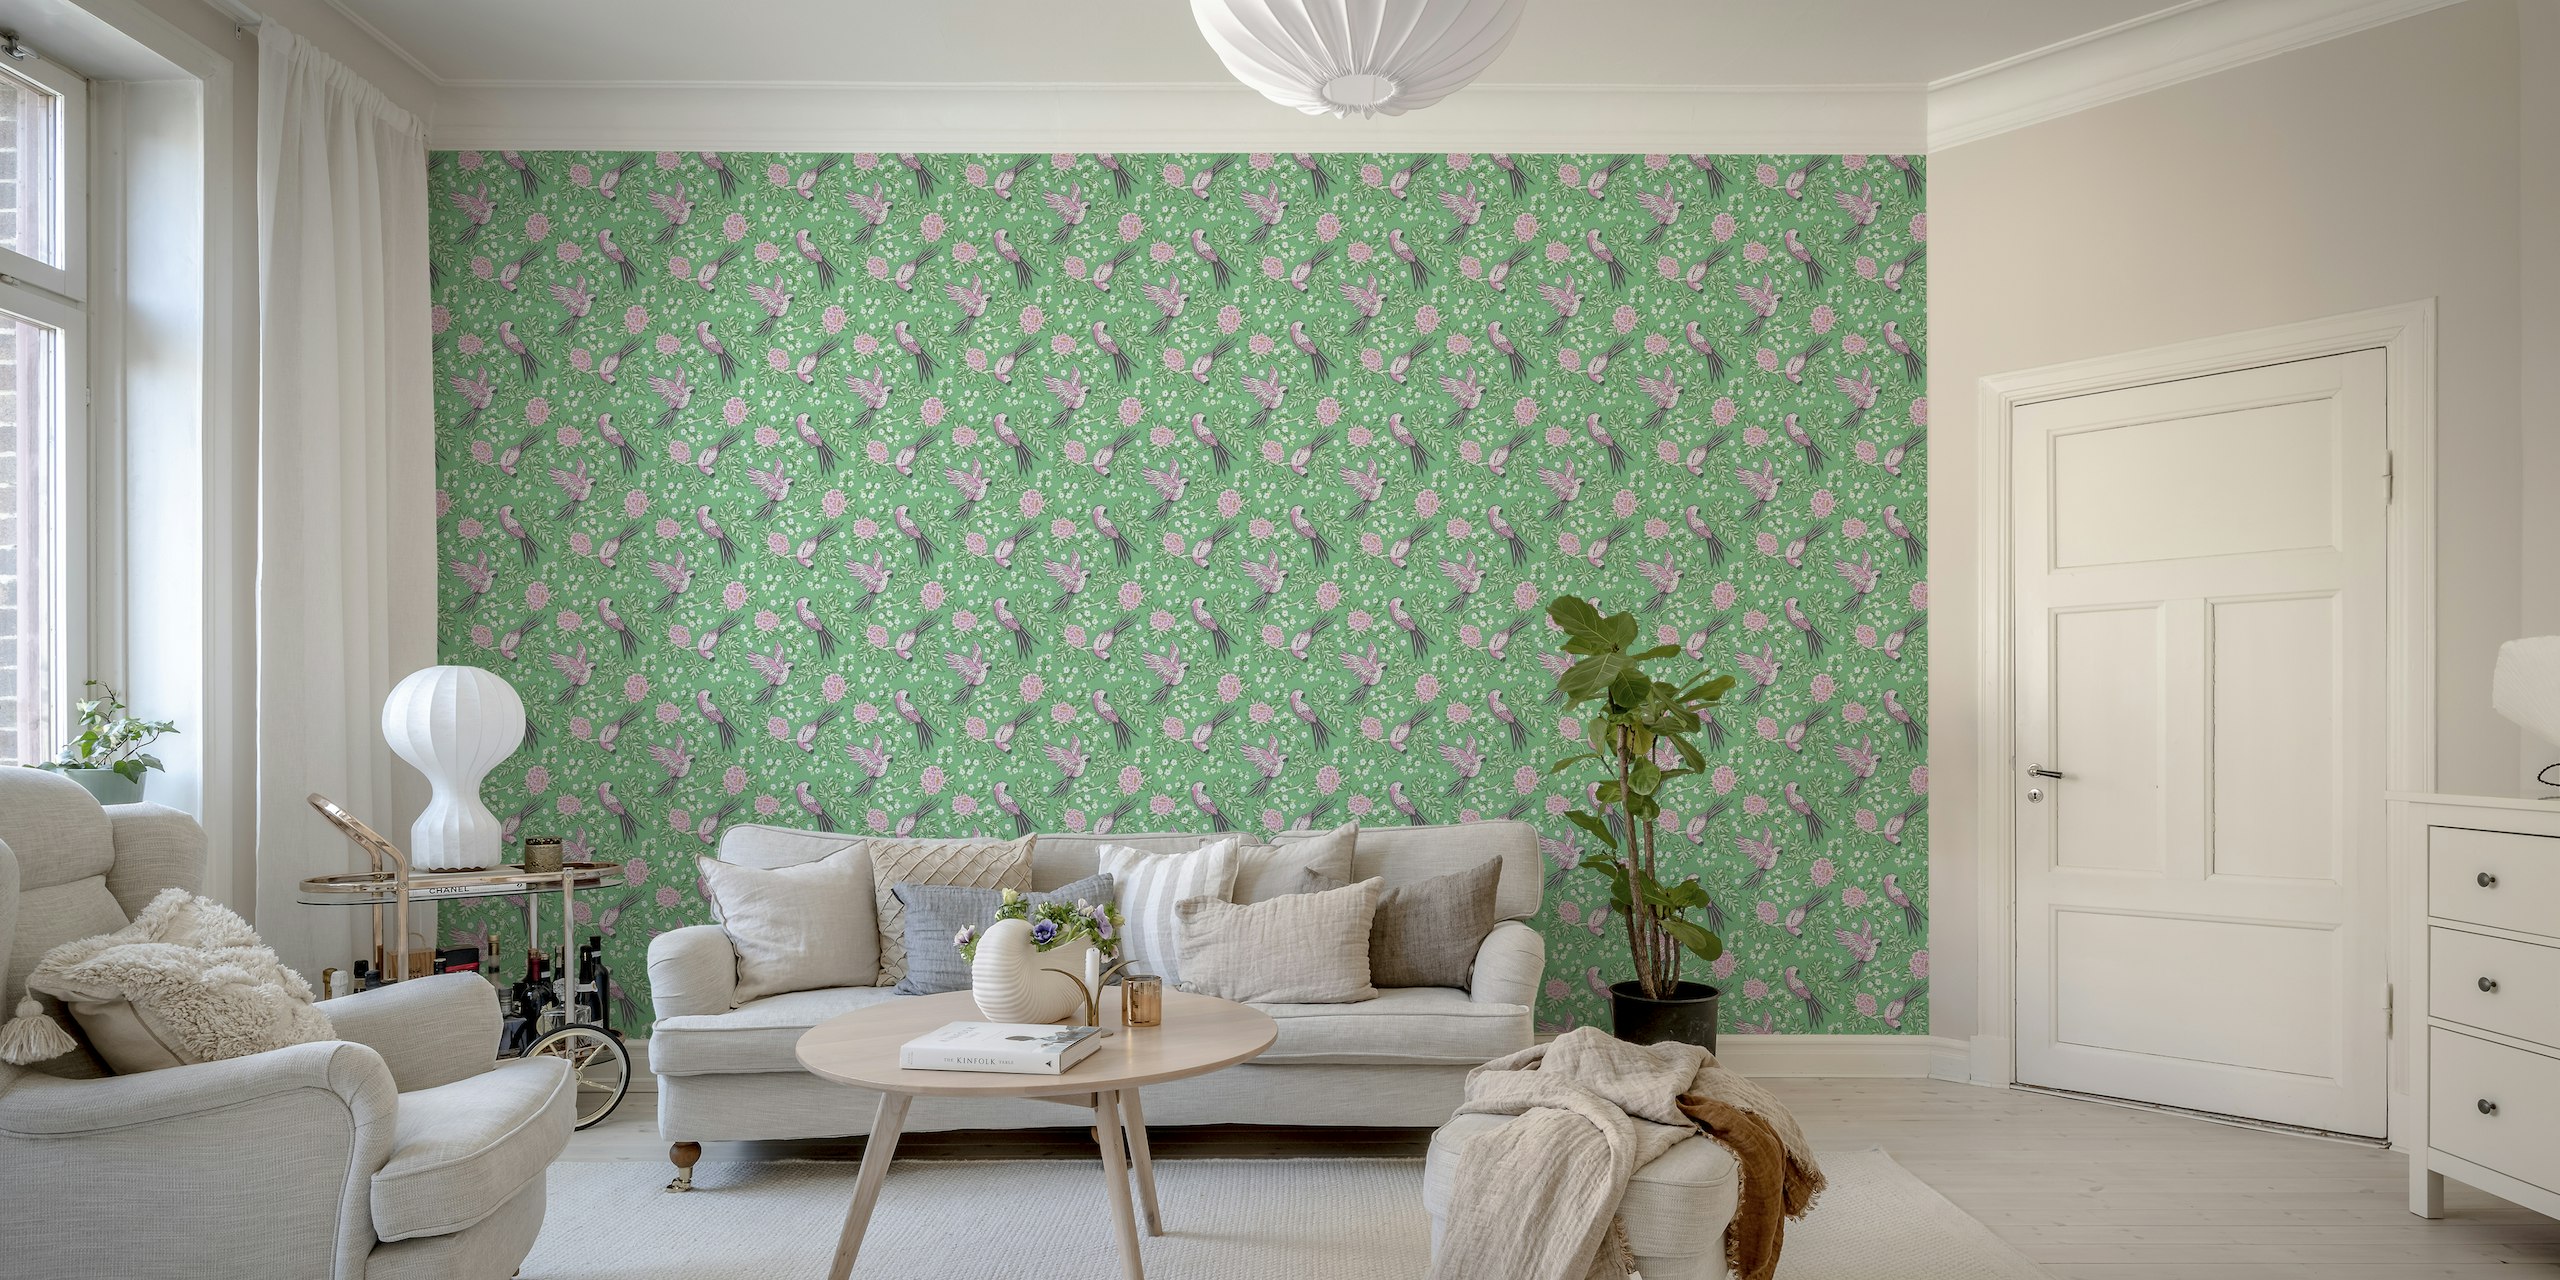 Parrot garden - pink and green wallpaper